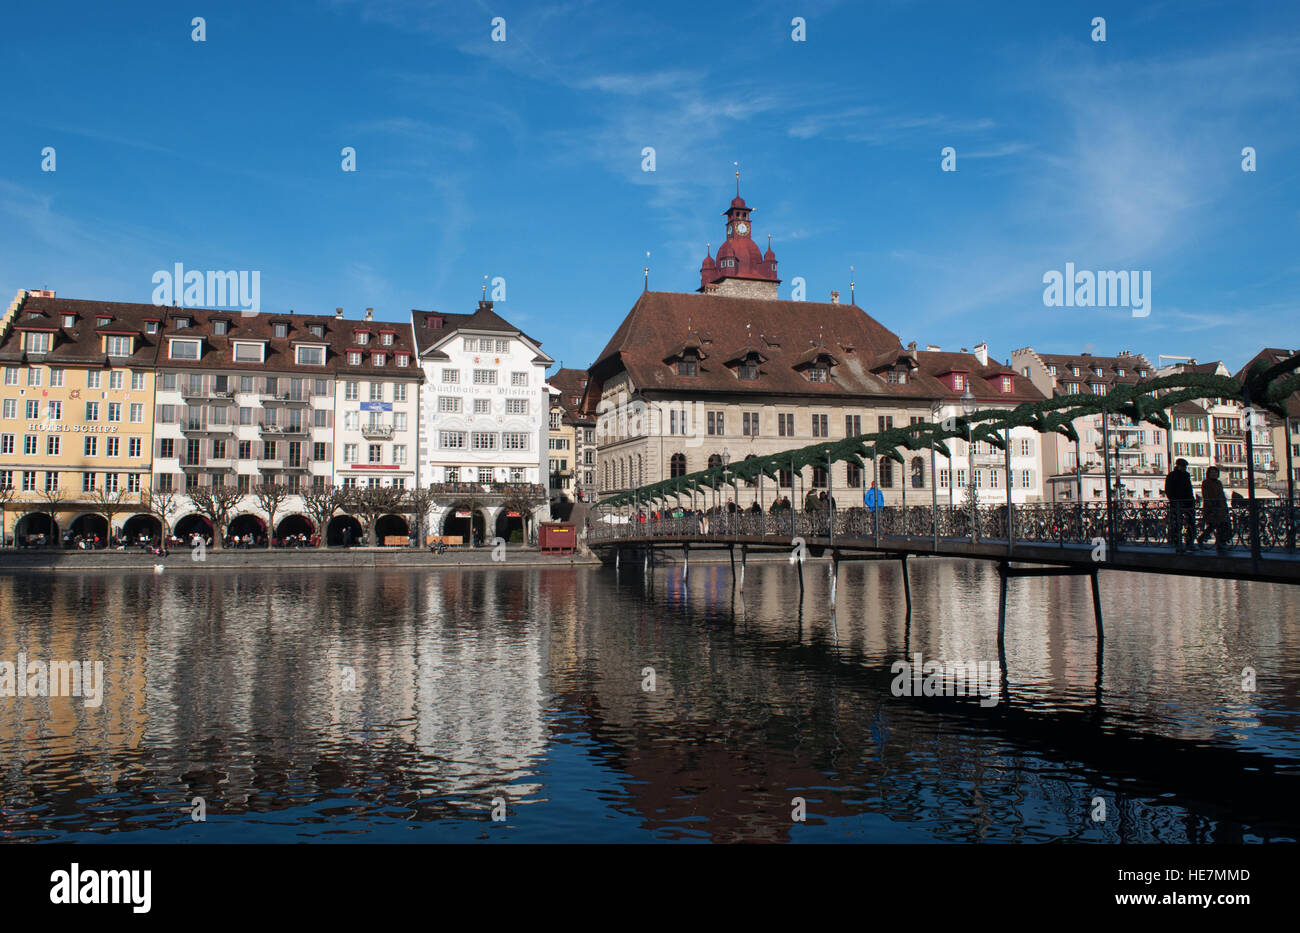 La Suisse, l'Europe : vue sur le Rathaussteg, le pont sur la Reuss, avec l'horizon de la ville médiévale de Lucerne Banque D'Images